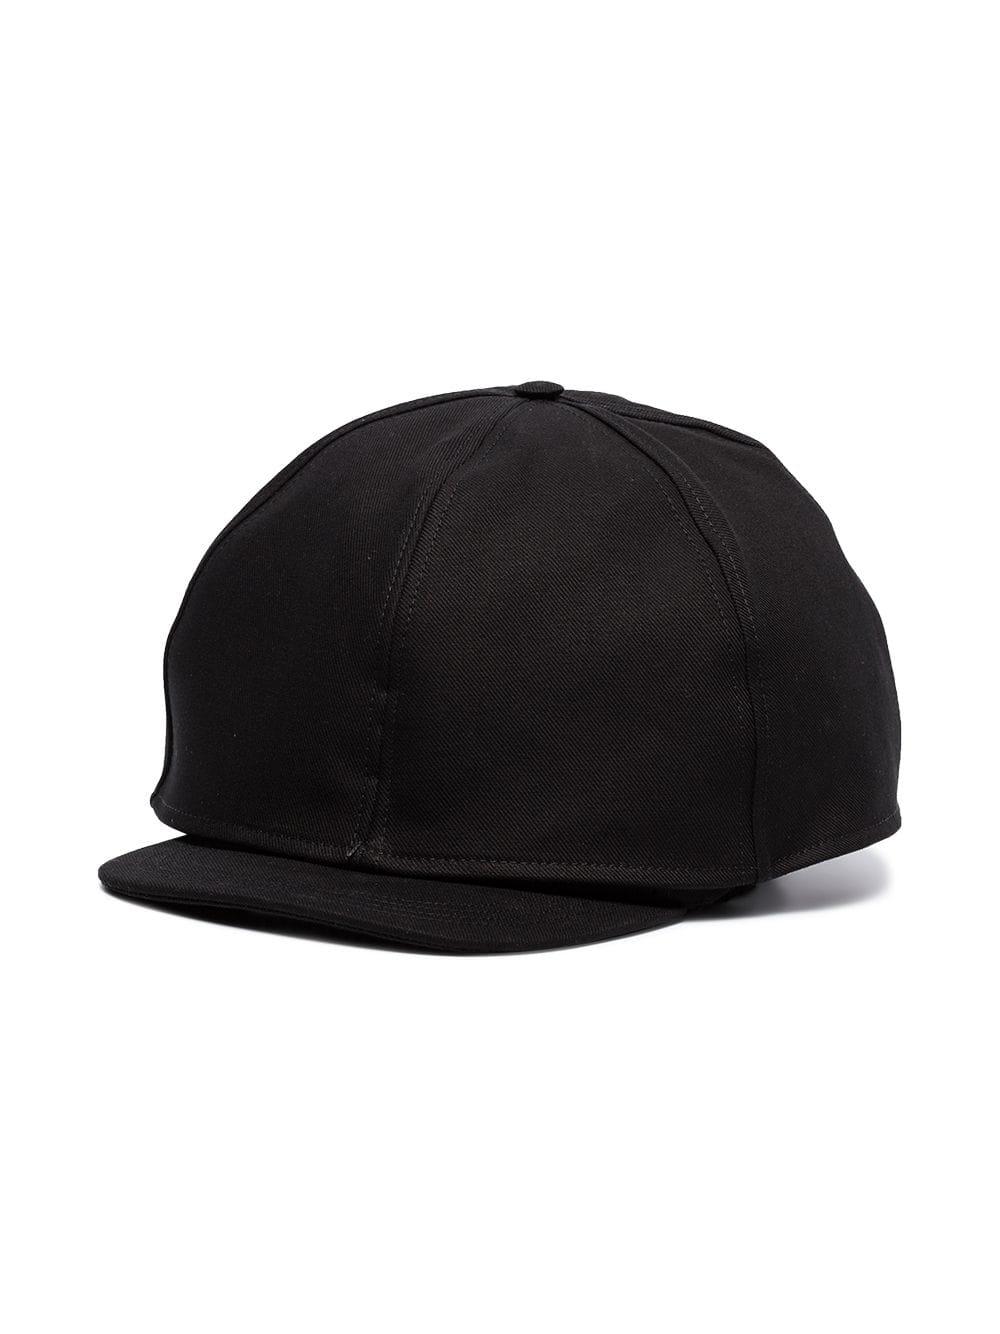 Raf Simons Oversized Baseball Cap in Black for Men - Lyst